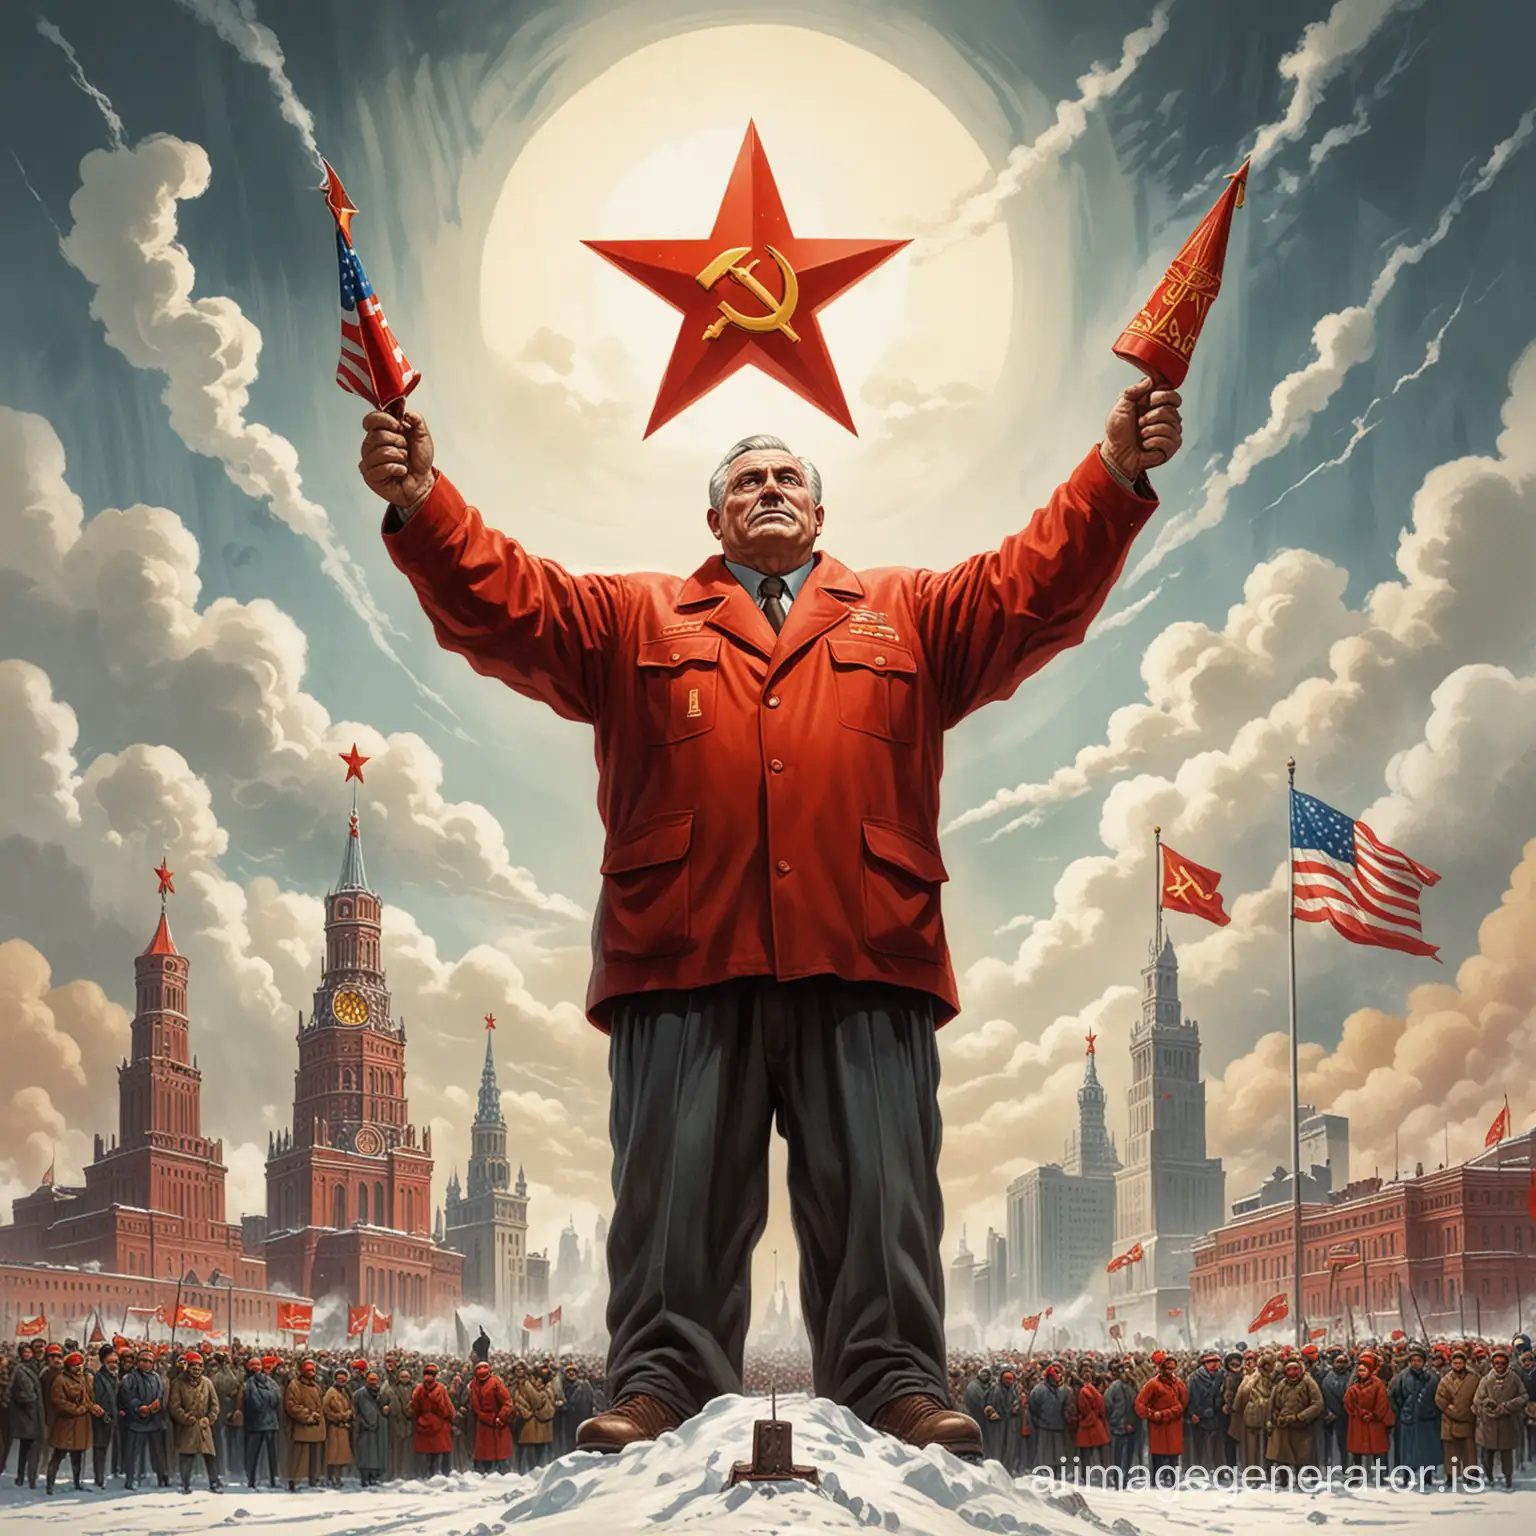 “Создайте карикатуру, где СССР изображен как гигантский символ советской власти, возвышающийся над миром во время холодной войны, а США - как маленький символ капитализма, удивленно смотрящий на величие Советского Союза.”